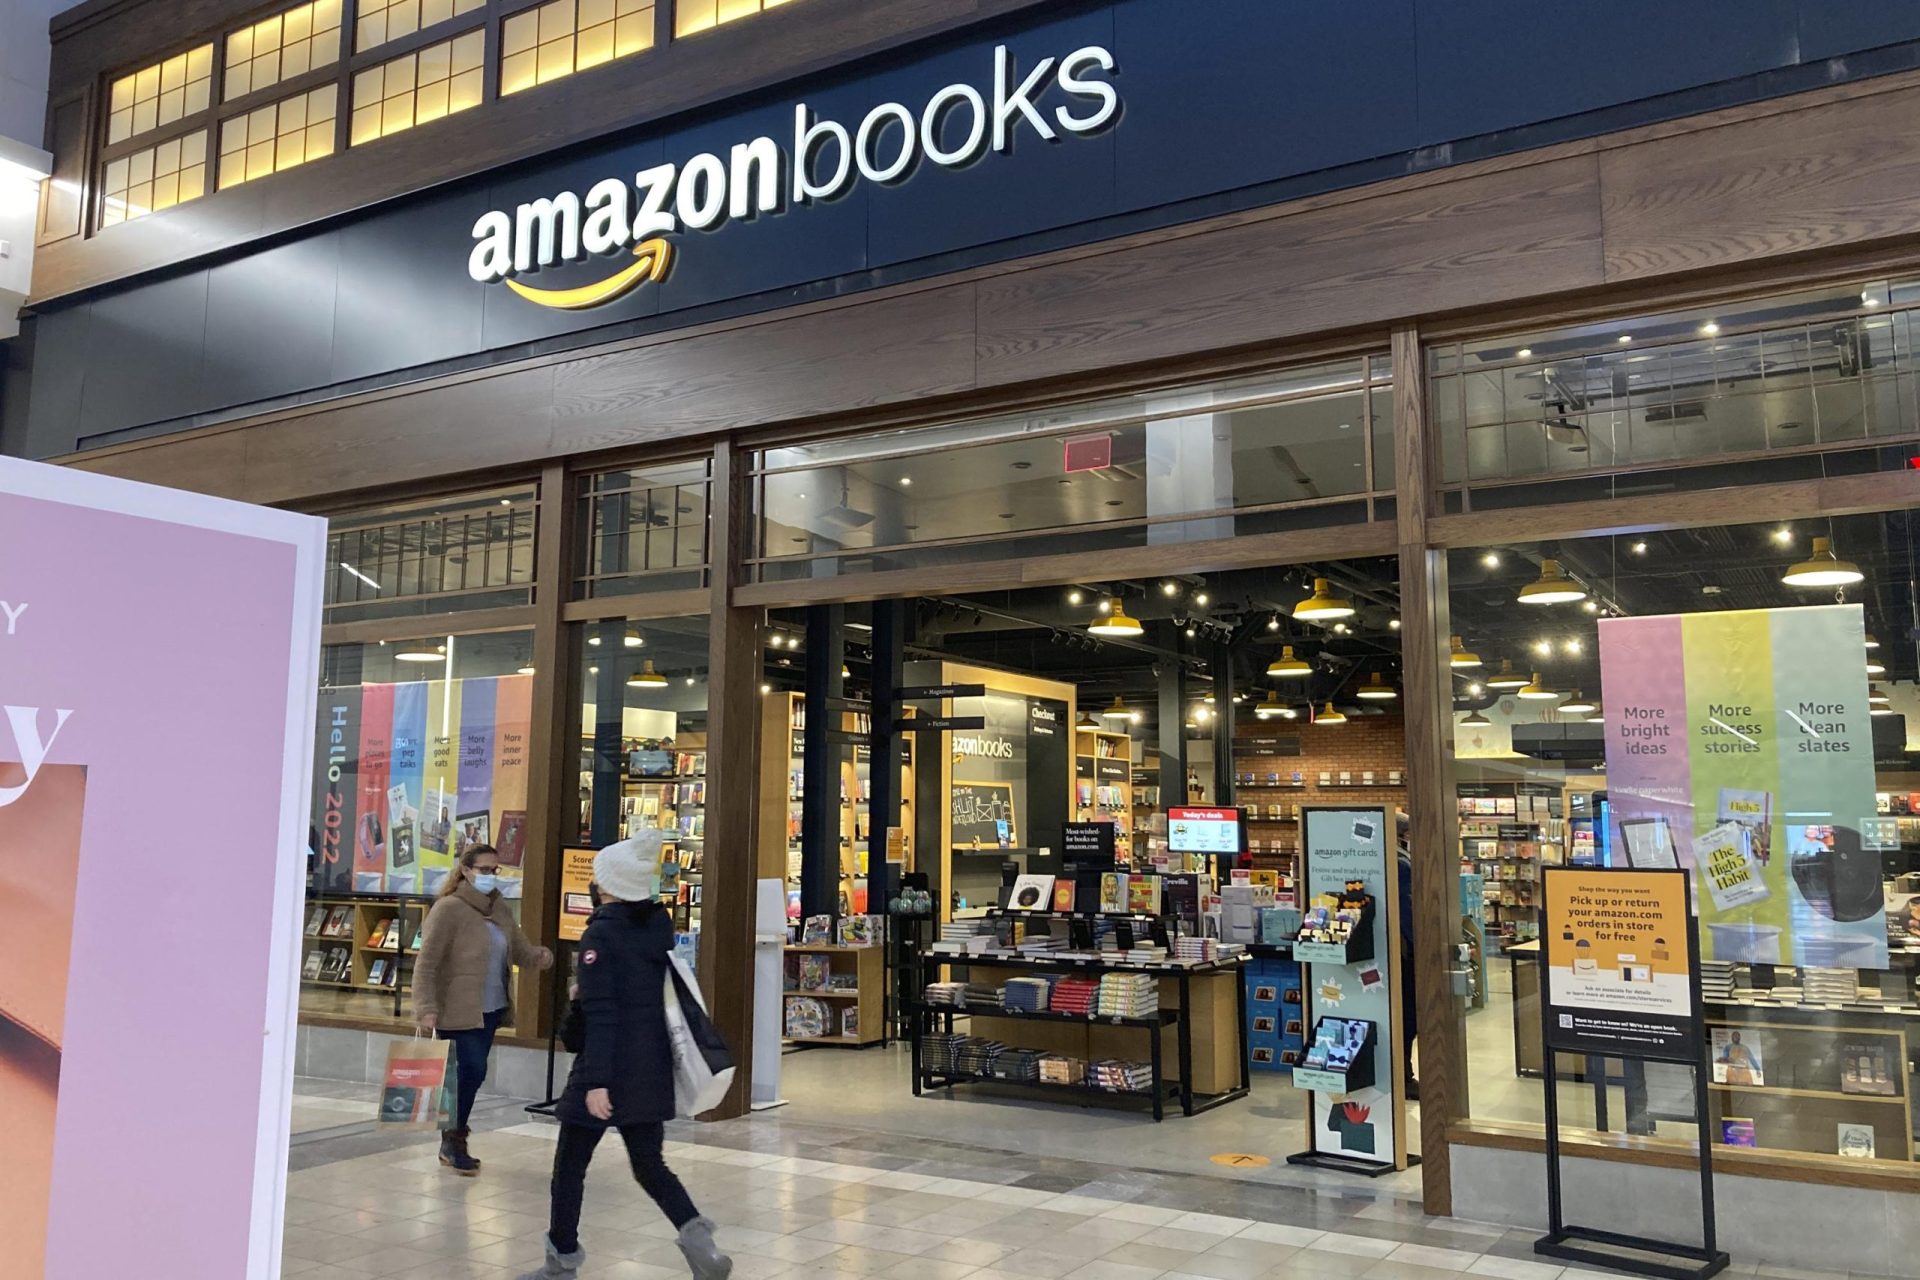 Amazon cierra sus librerías físicas y tiendas de 4 estrellas